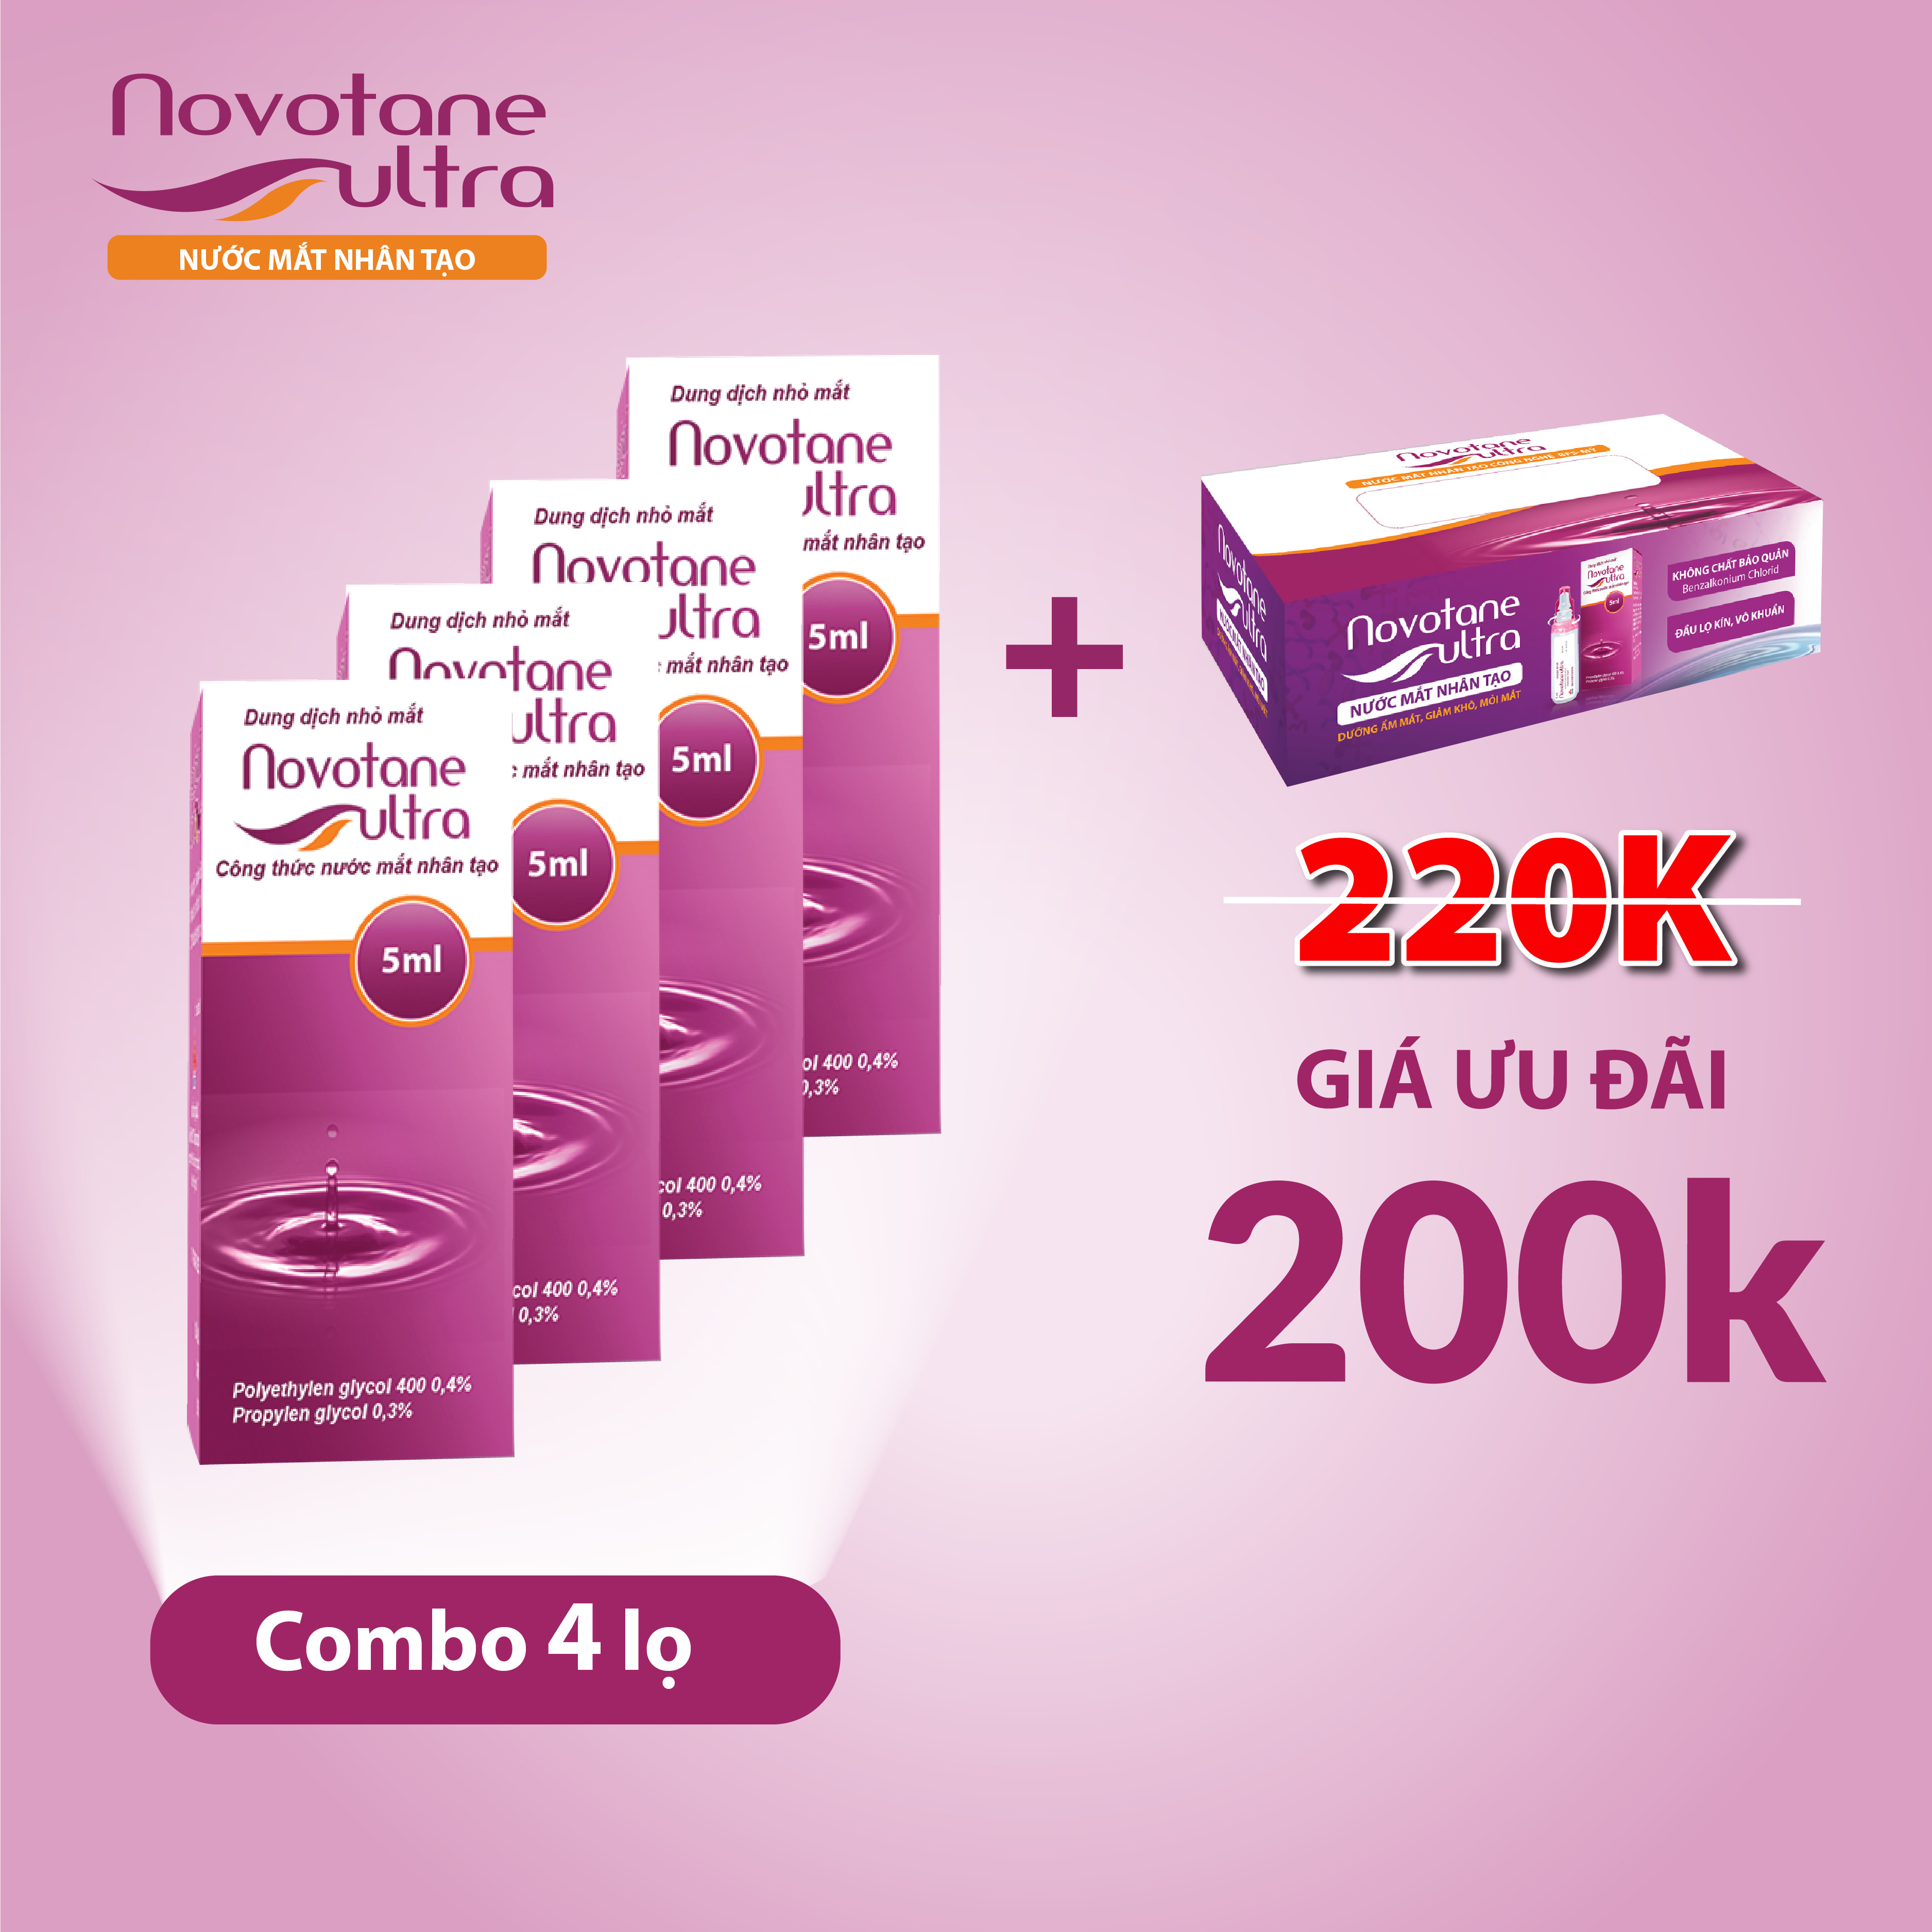 Combo 4 lọ Nước mắt nhân tạo Novotane Ultra 5ml giúp bảo vệ mắt, dưỡng ẩm, giảm khô, giảm mỏi mắt